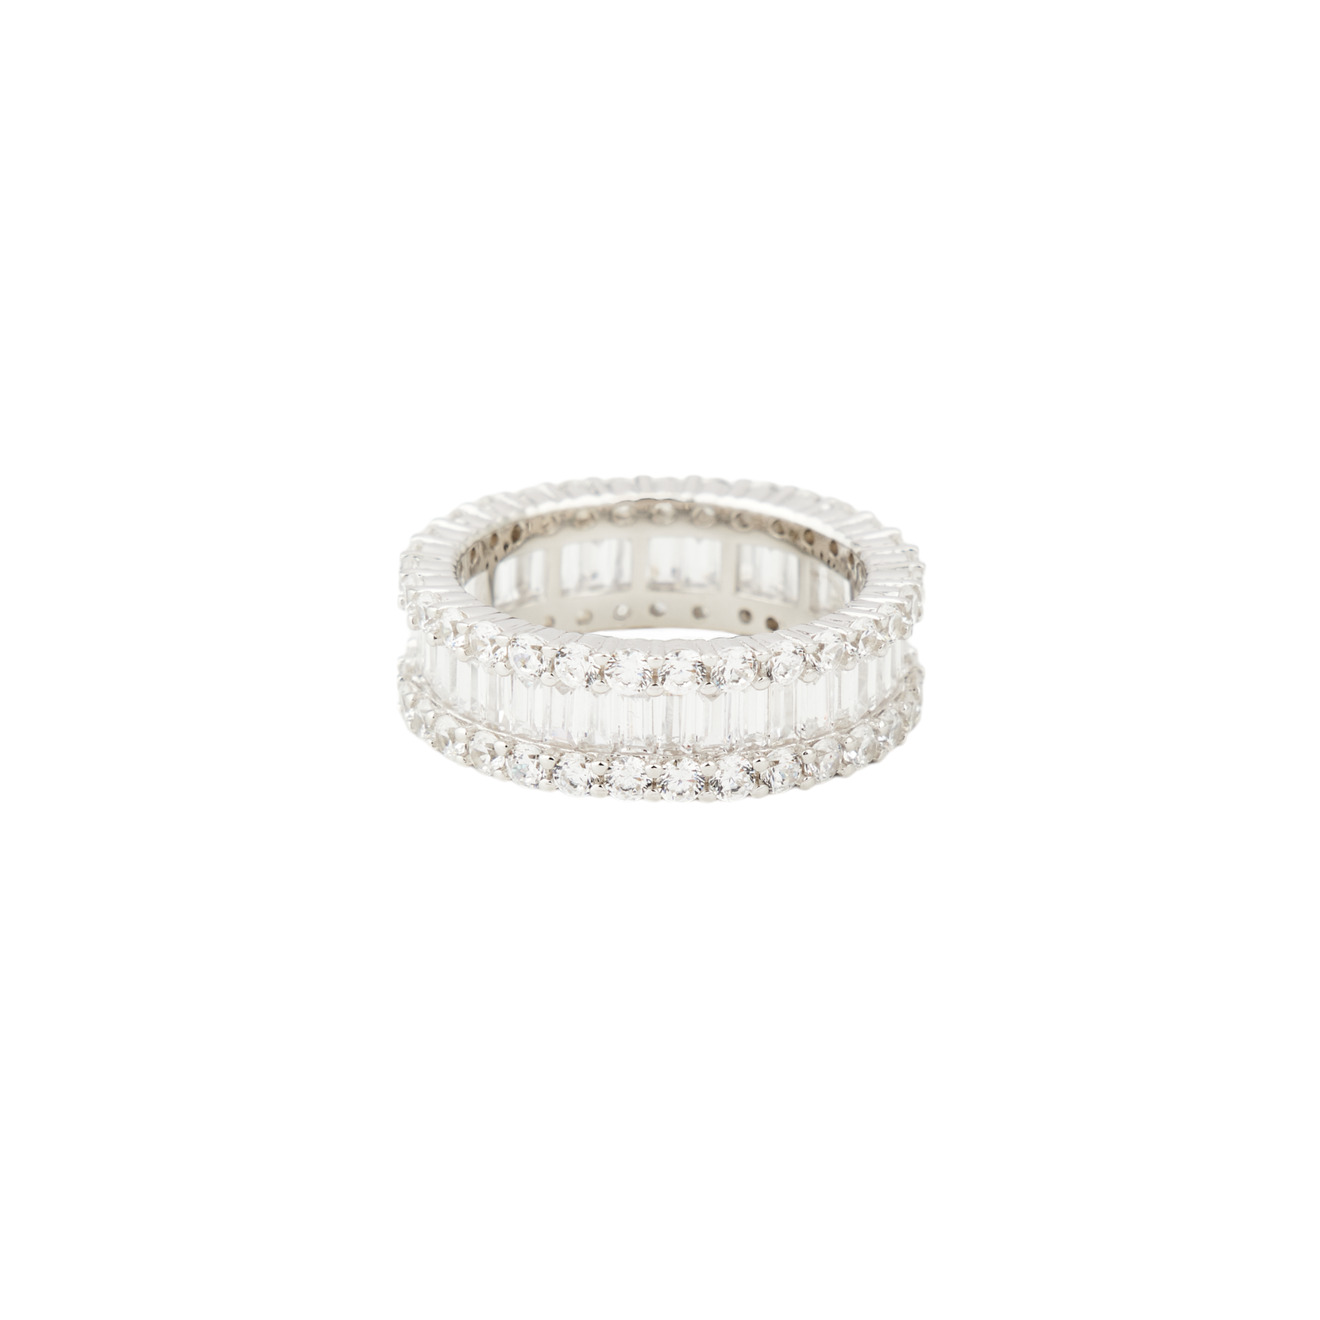 Holy Silver Кольцо из двух видов прозрачных кристаллов holy silver кольцо дорожка из розовых и белых кристаллов разной формы